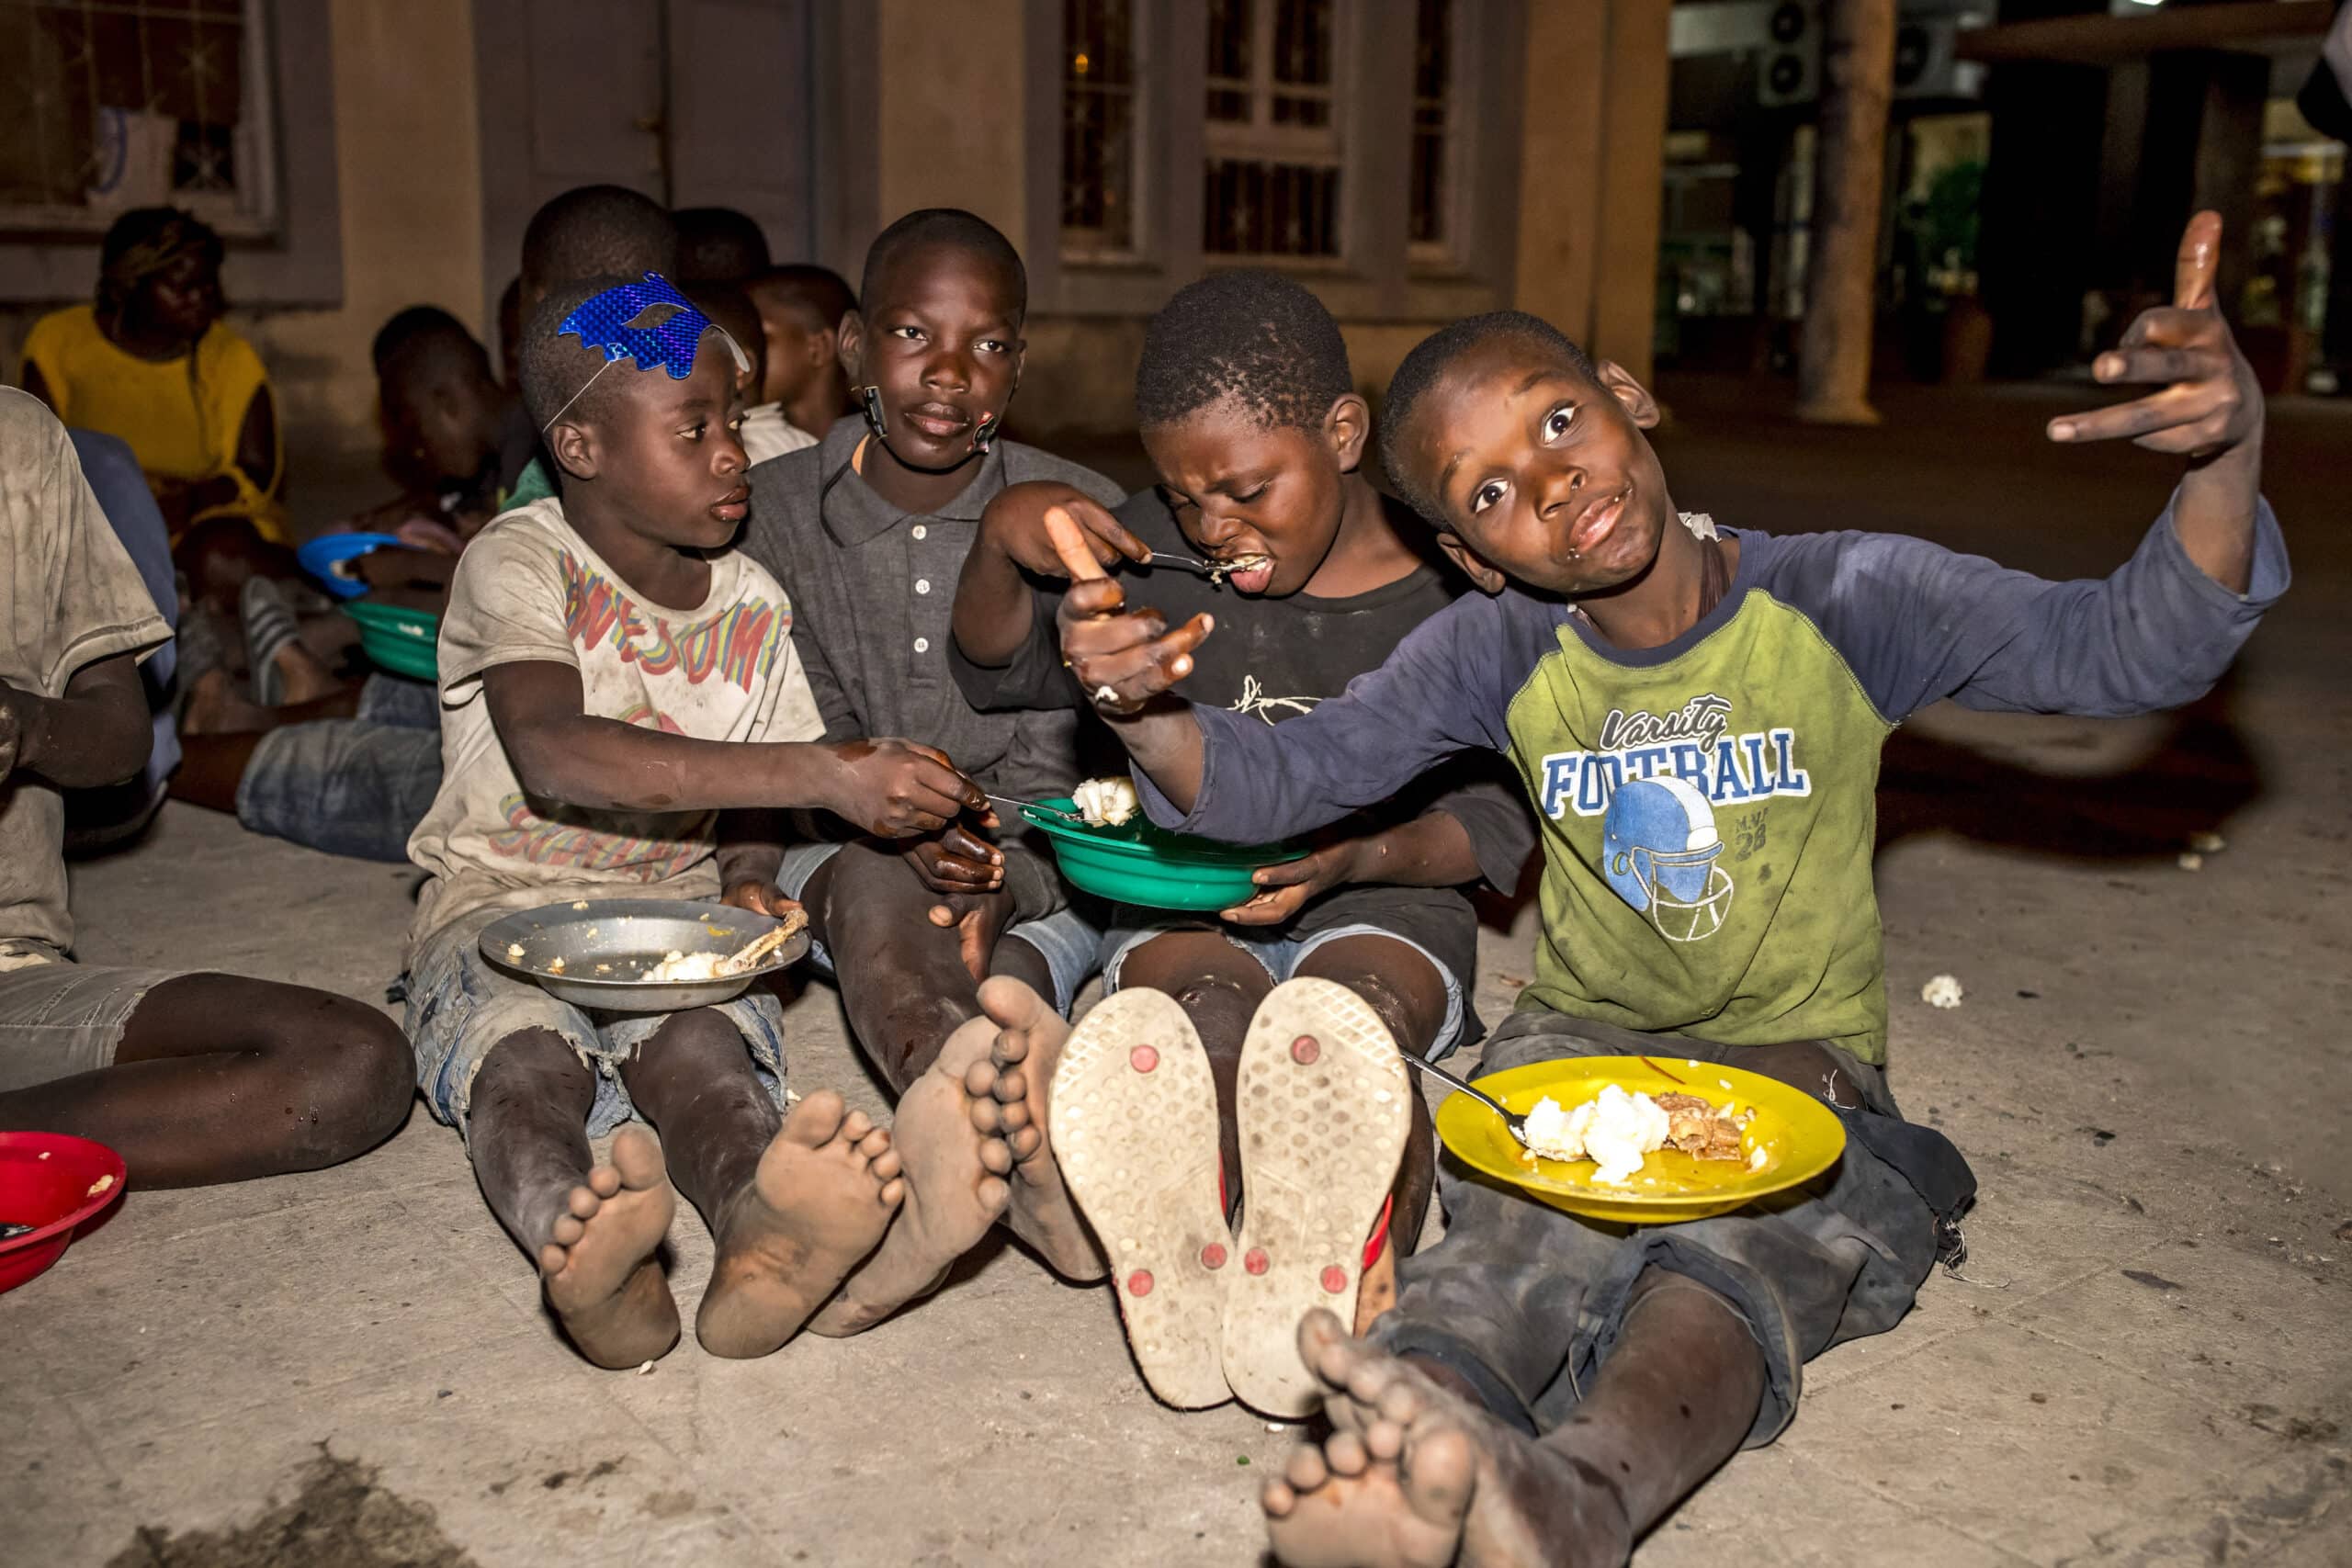 Eine Gruppe von sechs Jungen sitzt abends auf dem Boden und isst gemeinsam. Sie lächeln und unterhalten sich miteinander, vor ihnen stehen Teller mit Essen. © Fotografie Tomas Rodriguez